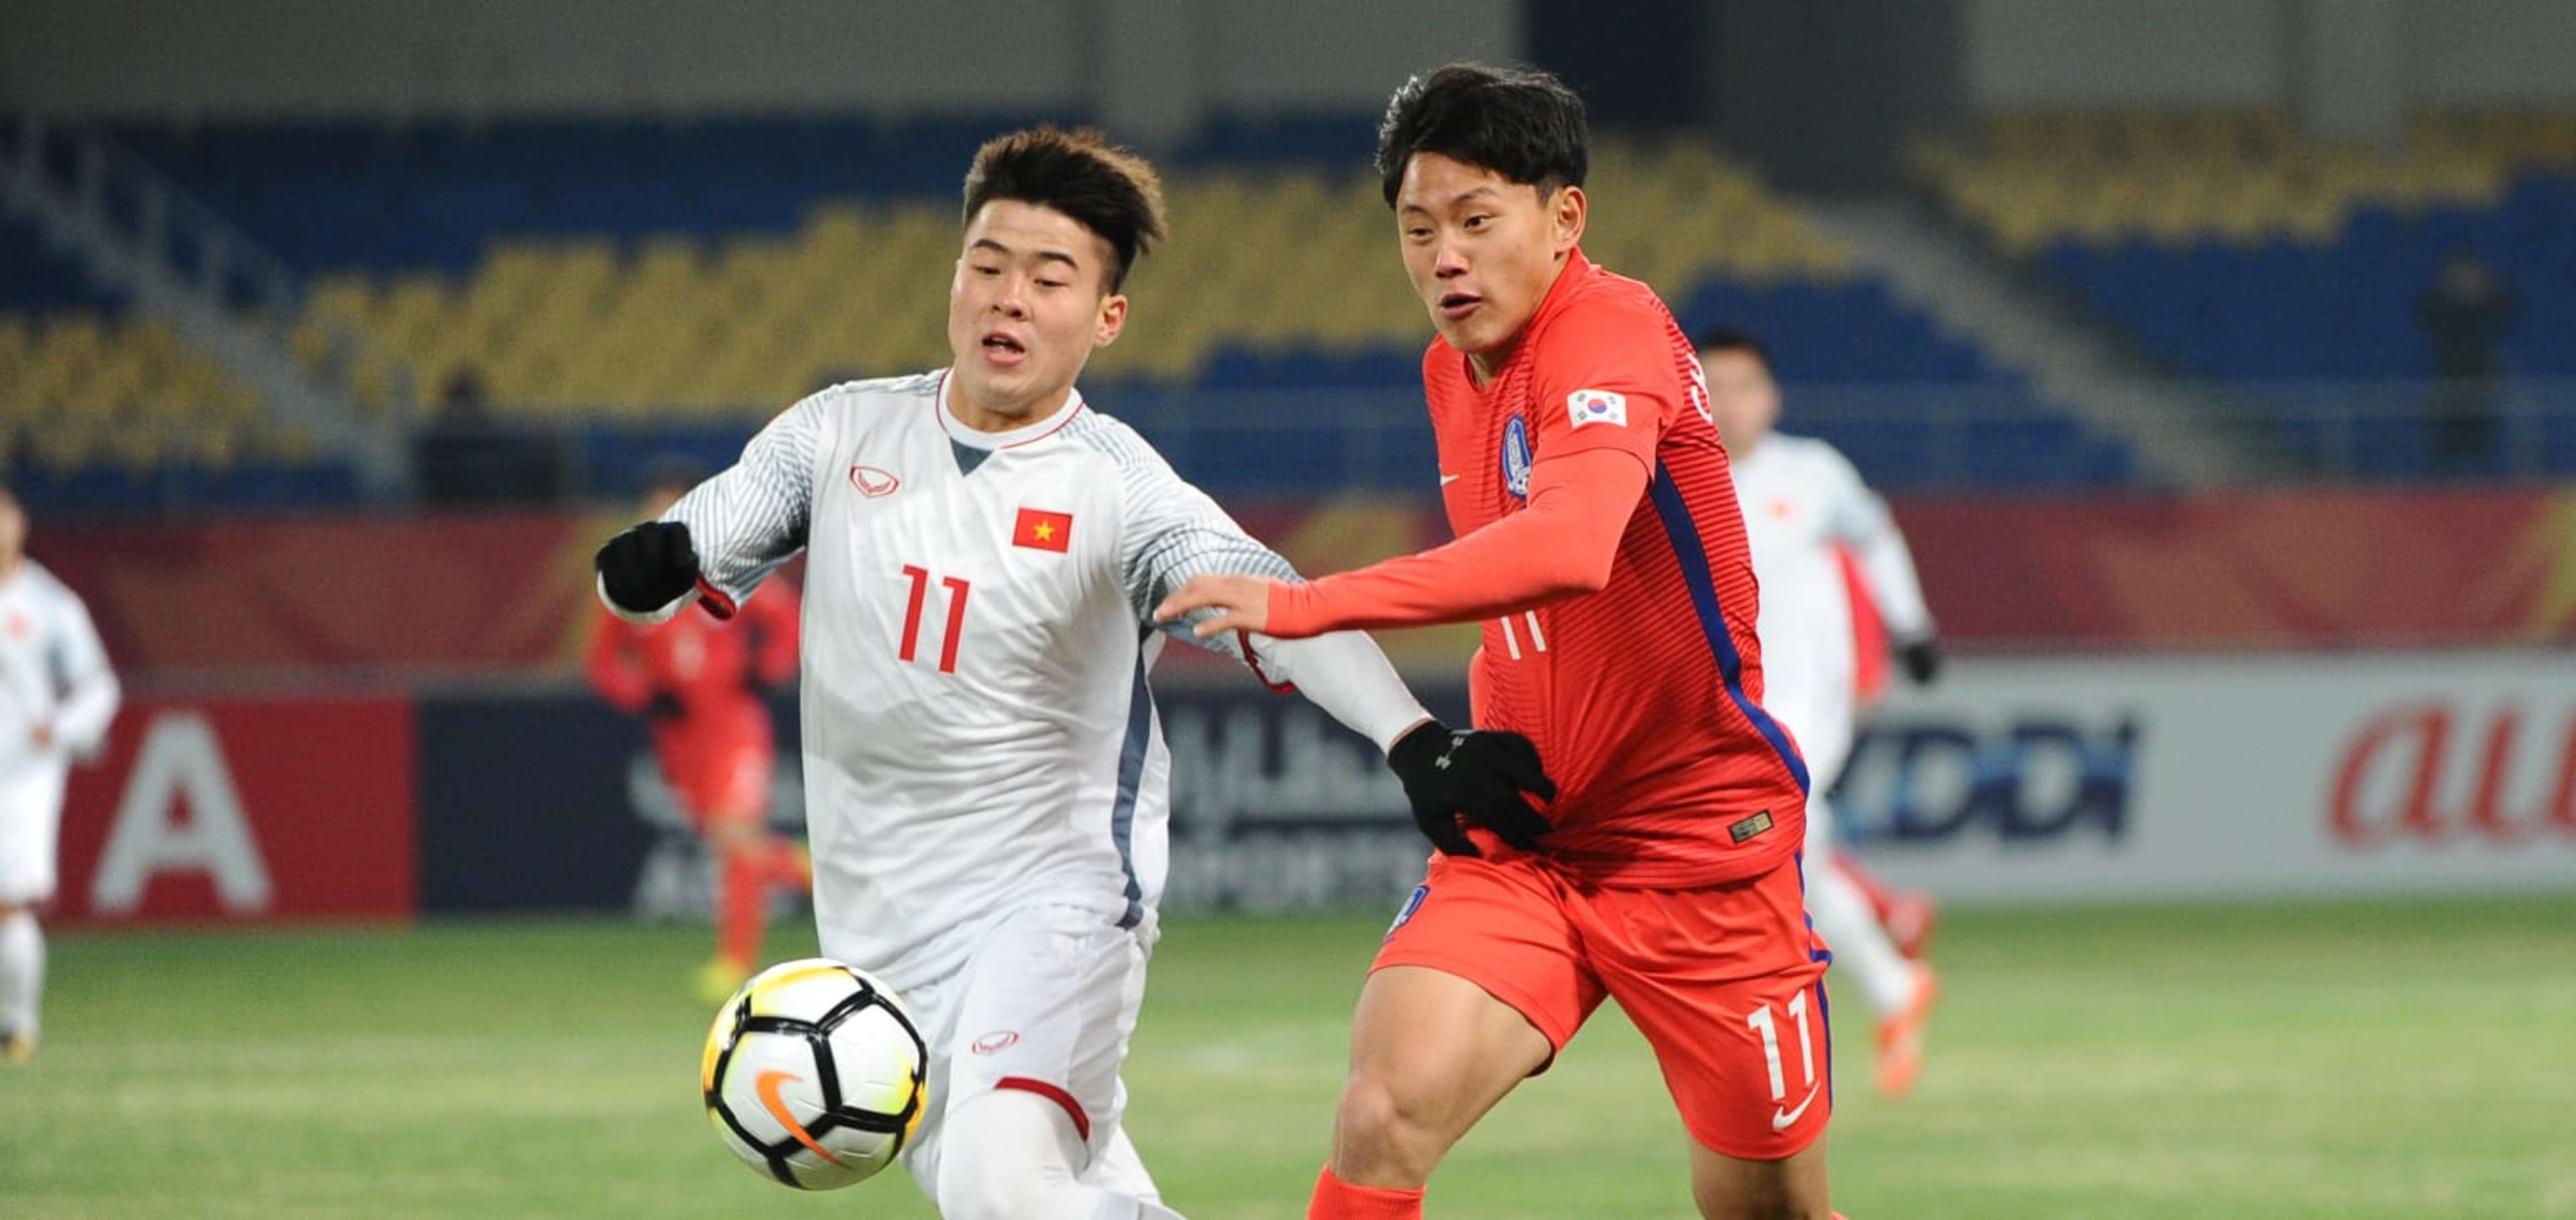 U23 Việt Nam U23 Nhật Bản VCK U23 châu Á 2018